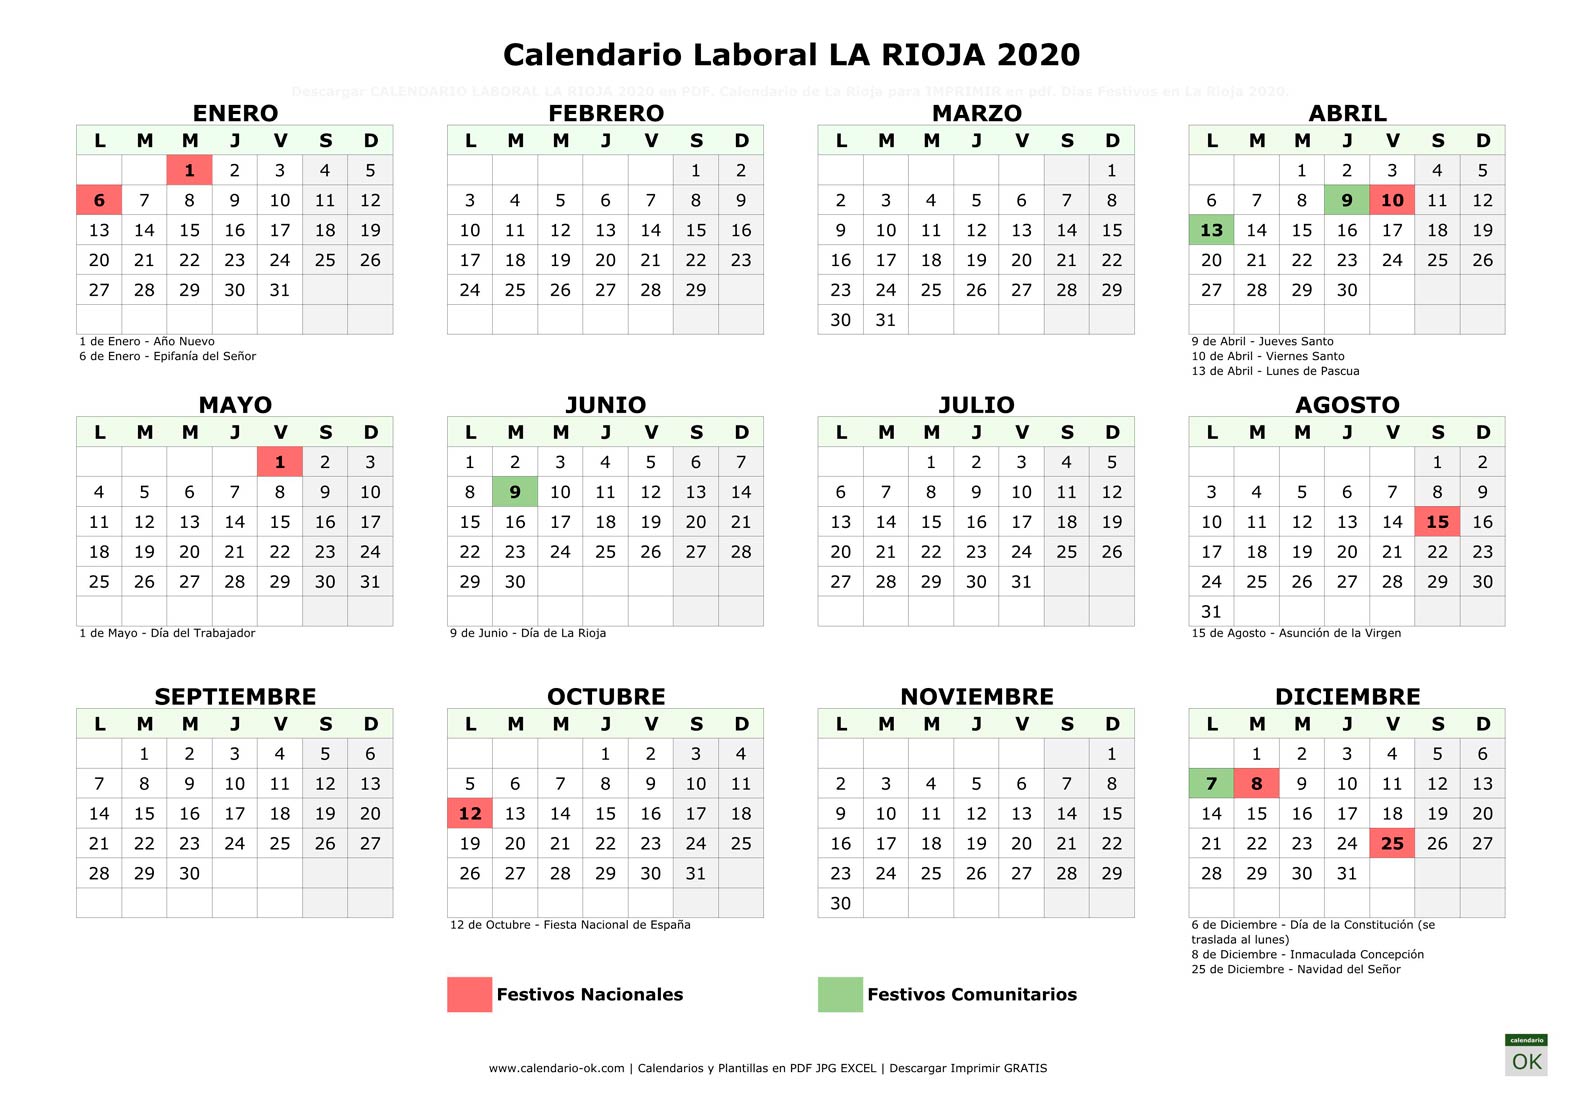 Calendario Laboral LA RIOJA 2020 horizontal